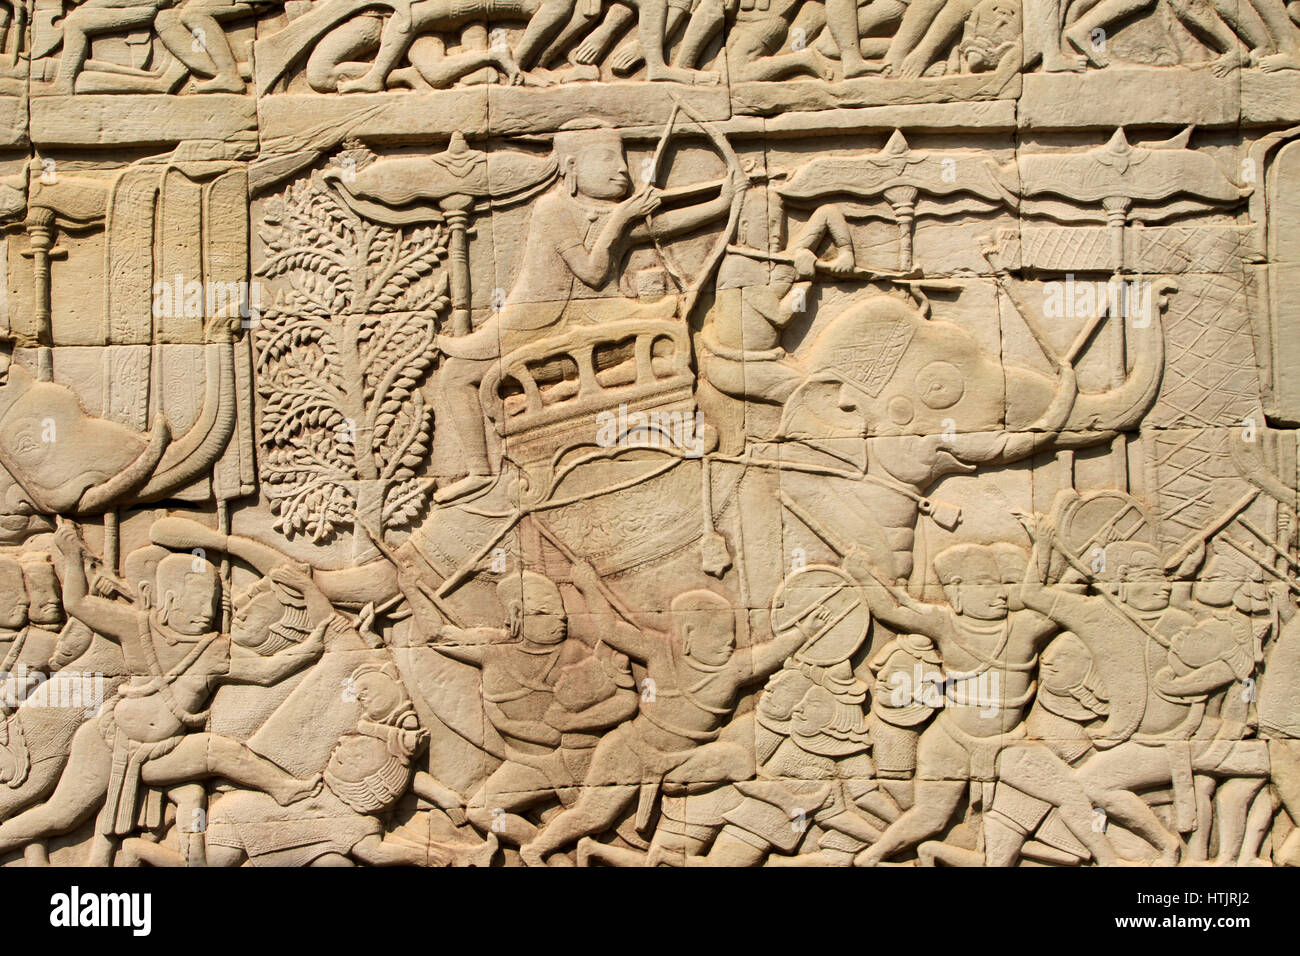 Un rilievo con gli elefanti e la guerra, scolpite nelle pareti presso il tempio Bayon in Angkor Thom, ex capitale dell Impero Khmer fuori mod Foto Stock